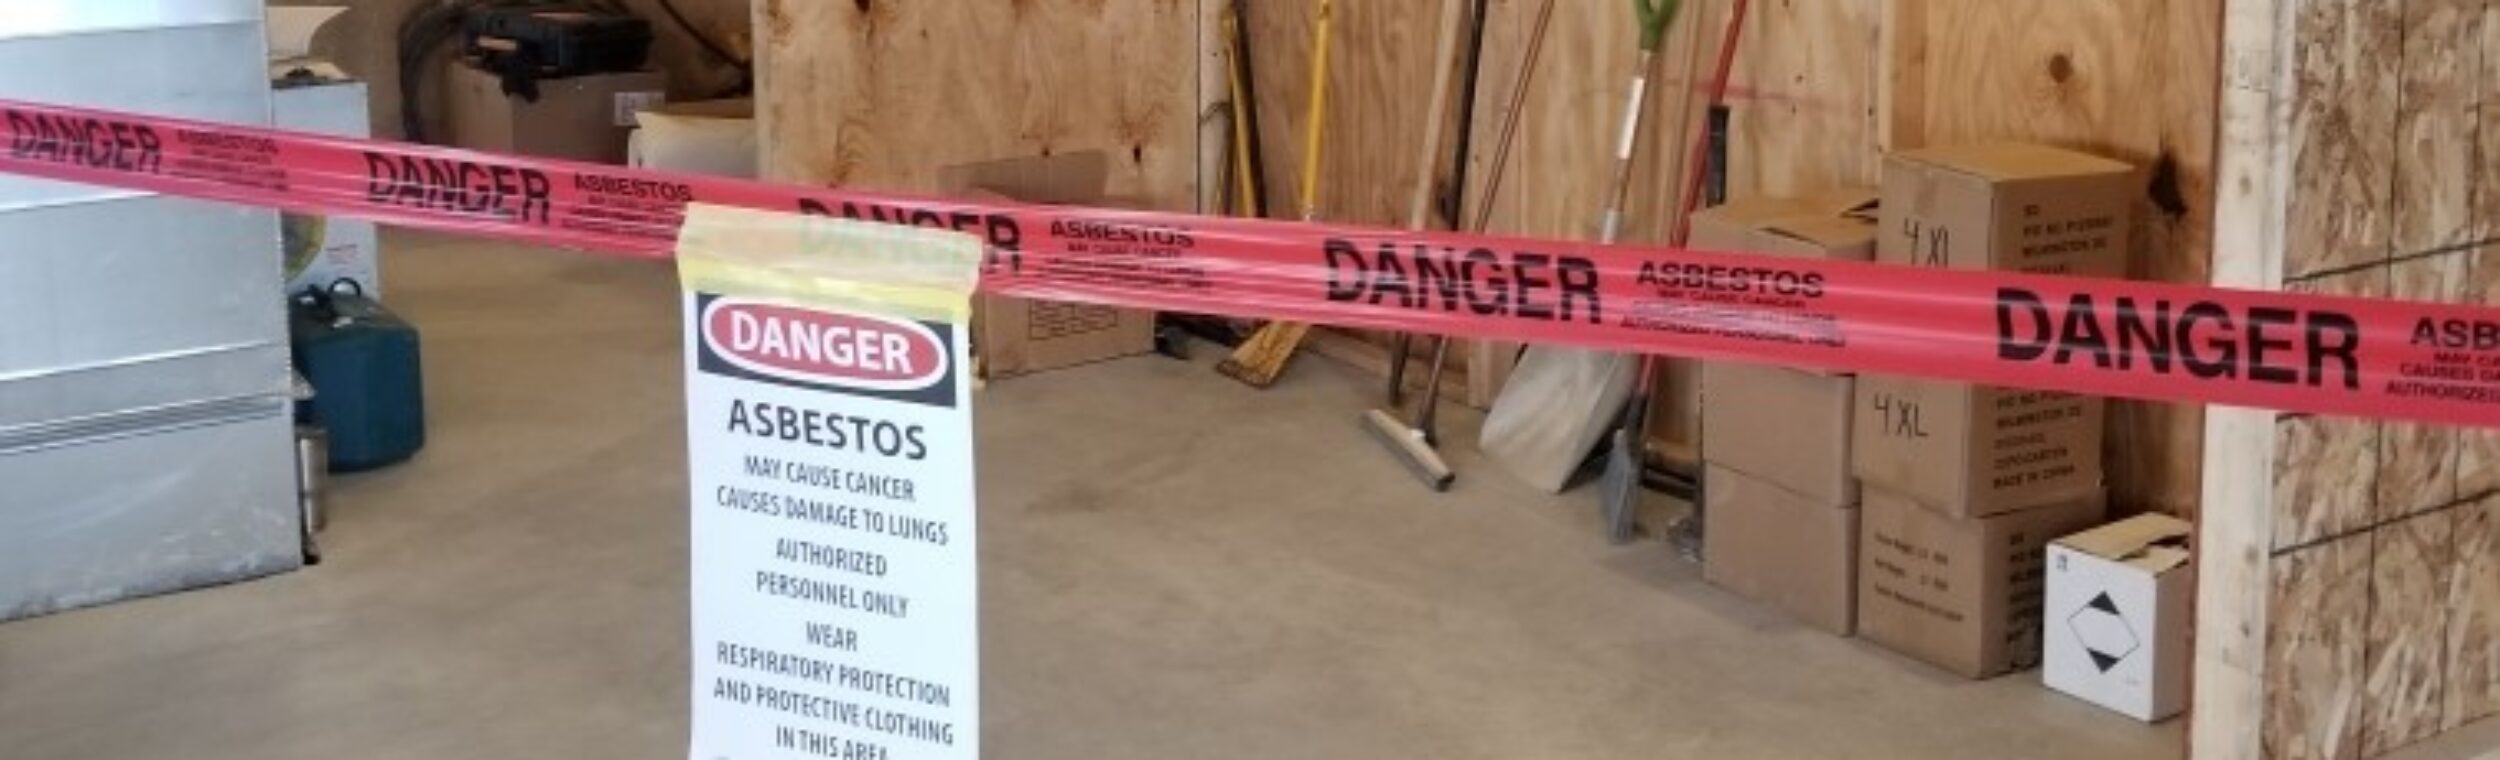 Asbestos Contaminated Demolition Central Ny 3